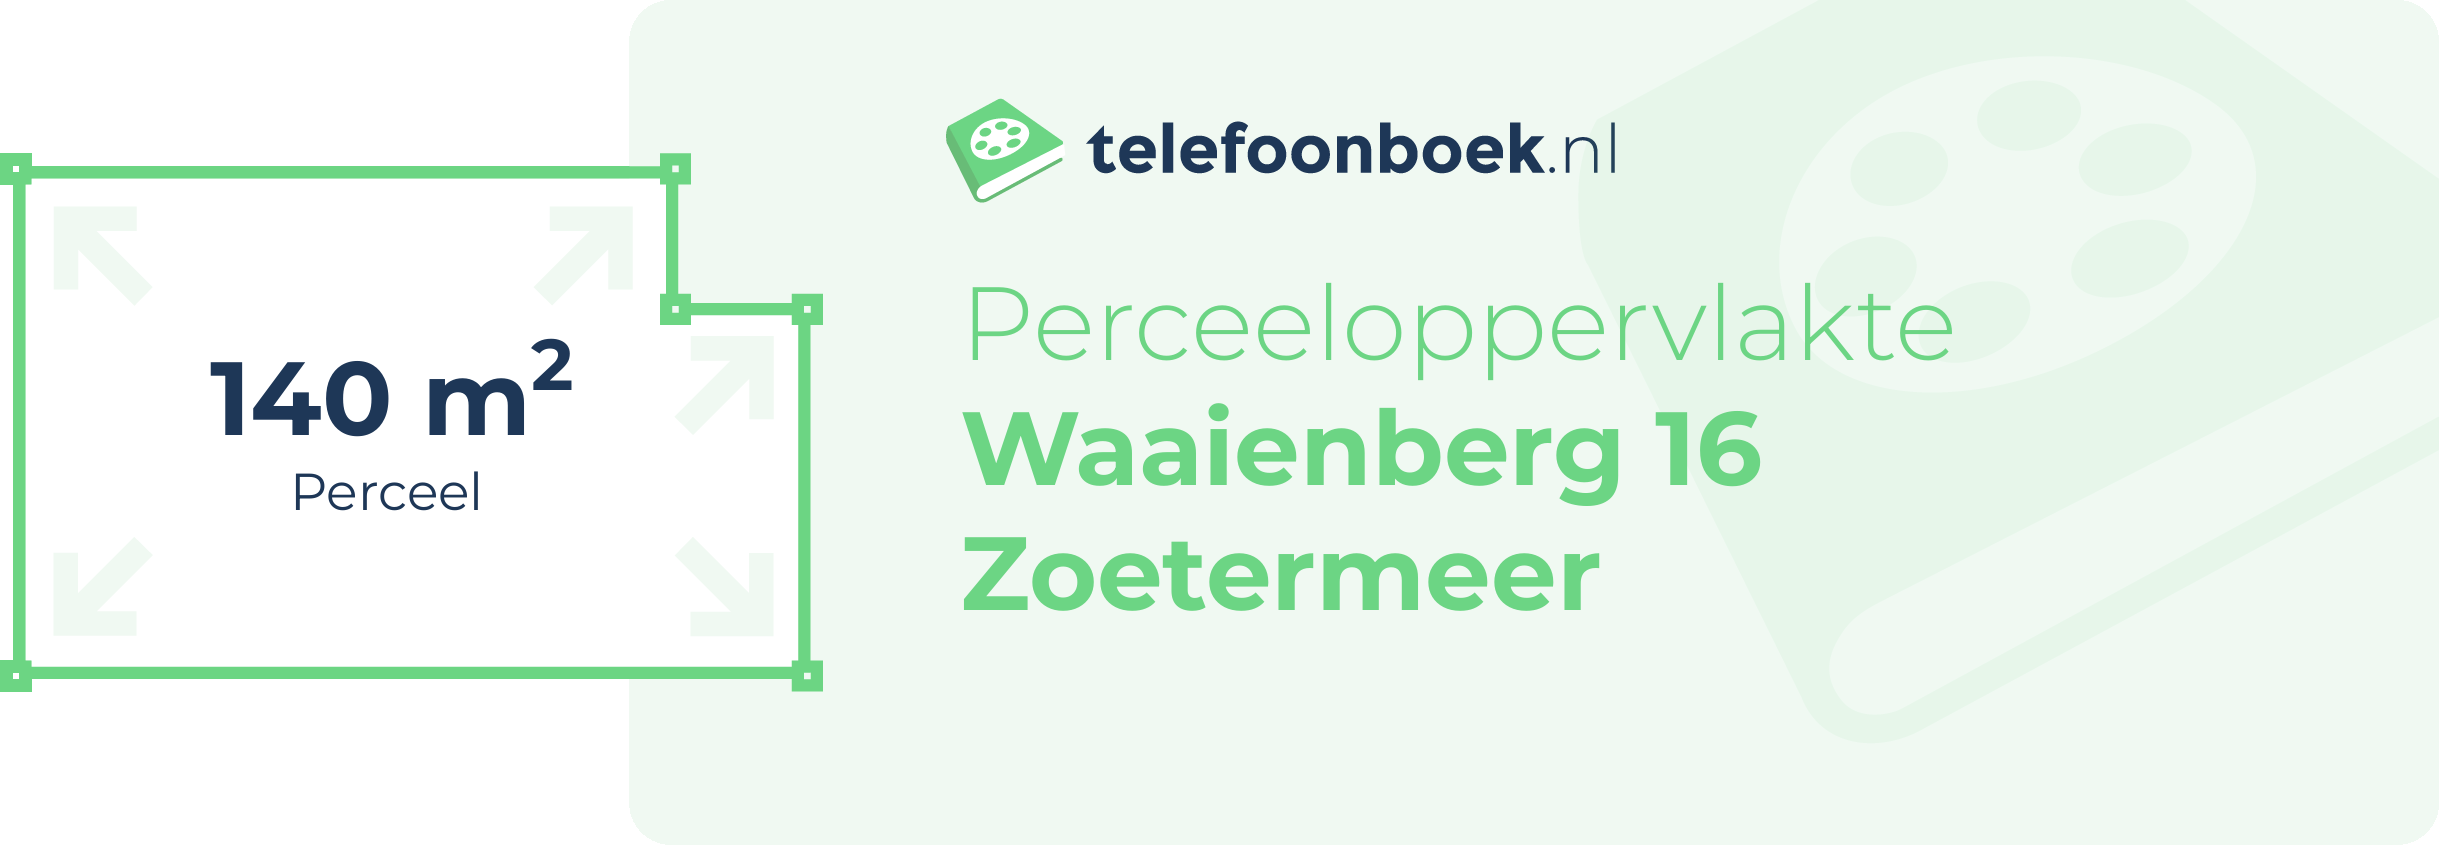 Perceeloppervlakte Waaienberg 16 Zoetermeer